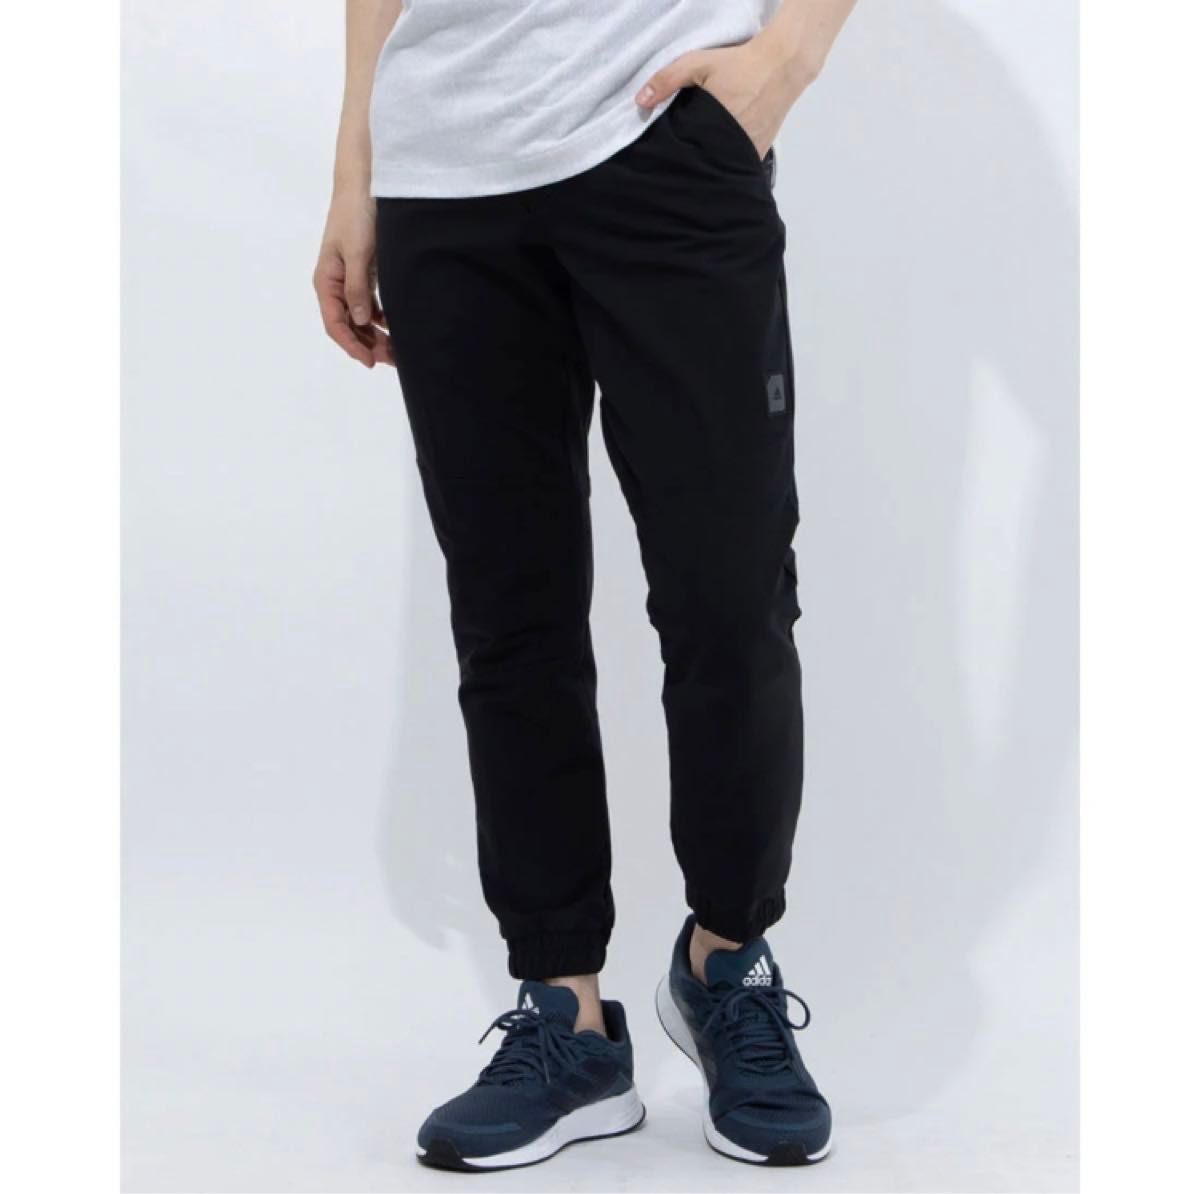 新品 アディダス adidas ゴルフパンツ ジョガーパンツ 黒ブラック XOサイズ 春夏 メンズ スラックス スタイリッシュ